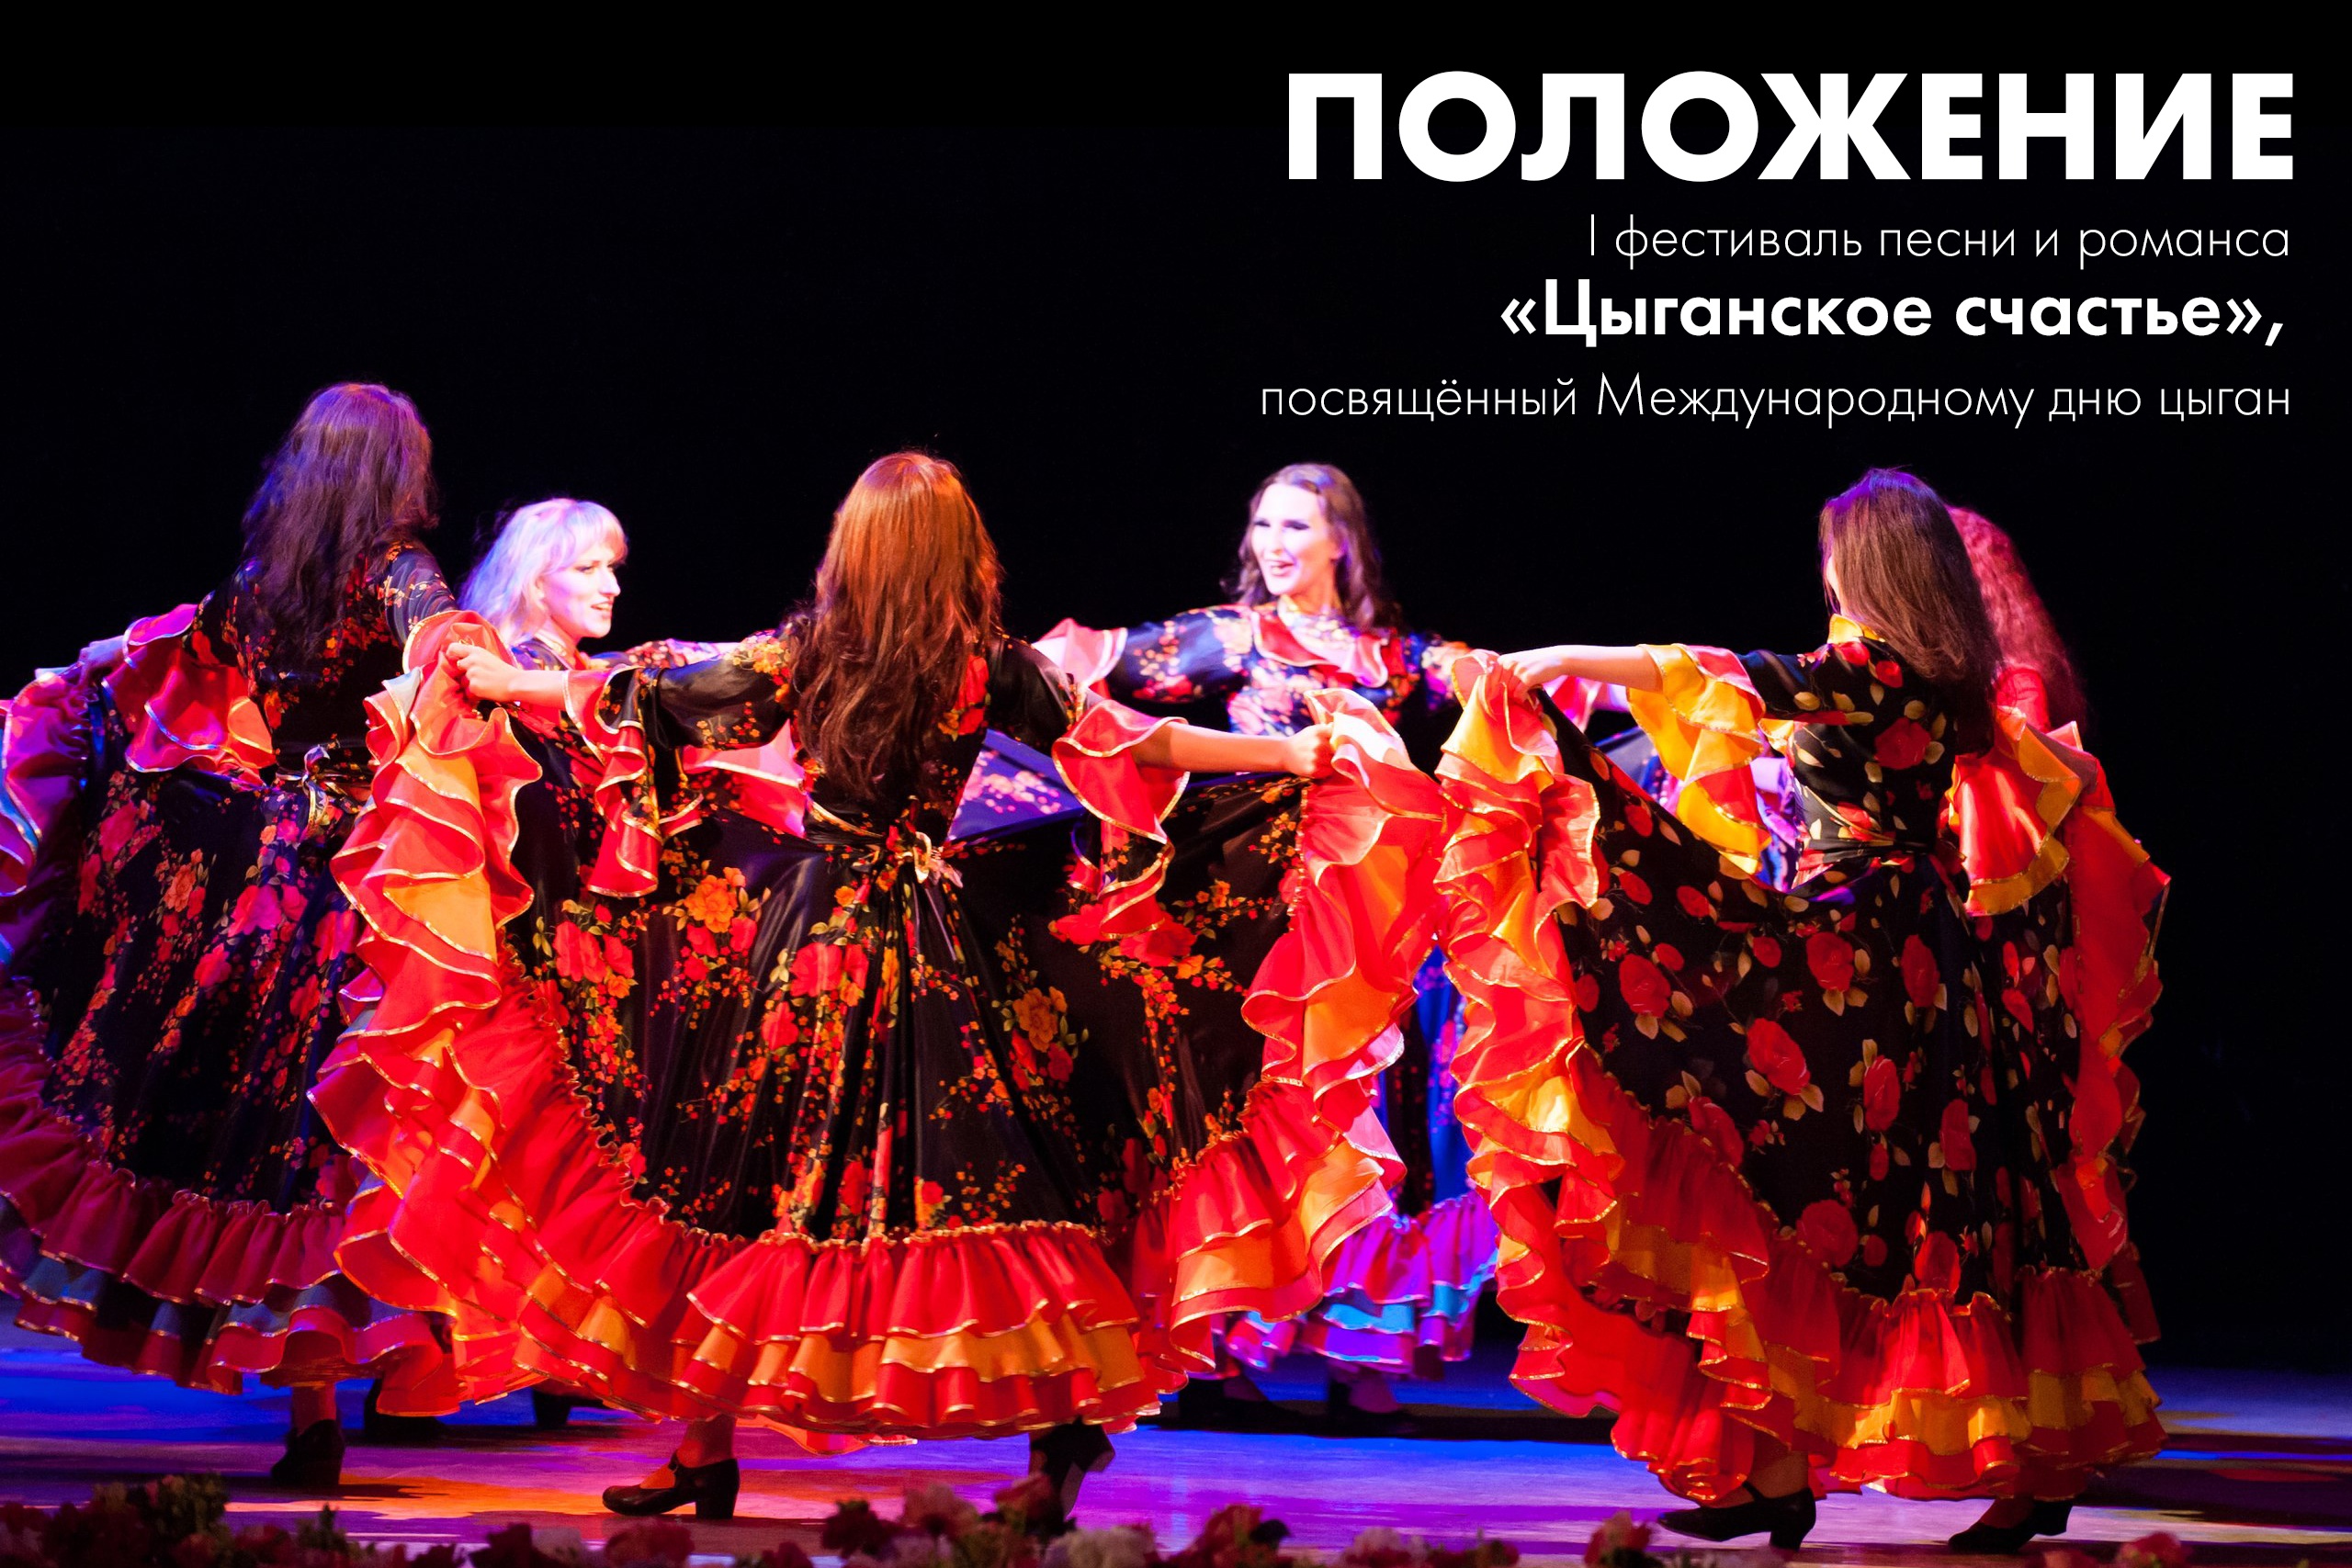 Новодвинский городской культурный центр принимает заявки на I фестиваль песни и романса «Цыганское счастье», посвящённый Международному дню цыган.